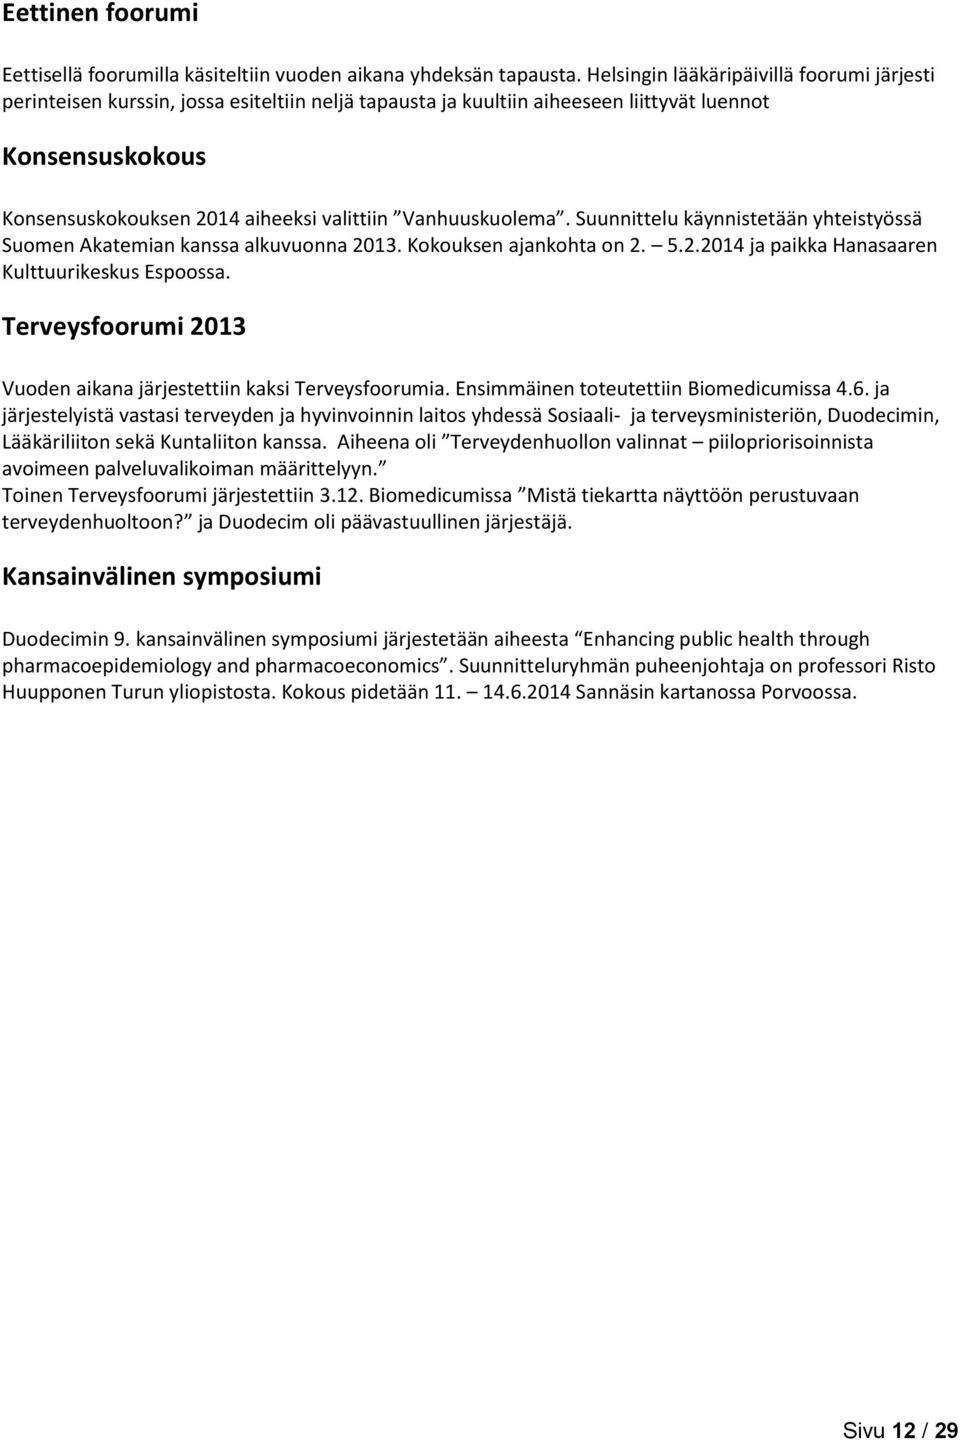 Vanhuuskuolema. Suunnittelu käynnistetään yhteistyössä Suomen Akatemian kanssa alkuvuonna 2013. Kokouksen ajankohta on 2. 5.2.2014 ja paikka Hanasaaren Kulttuurikeskus Espoossa.